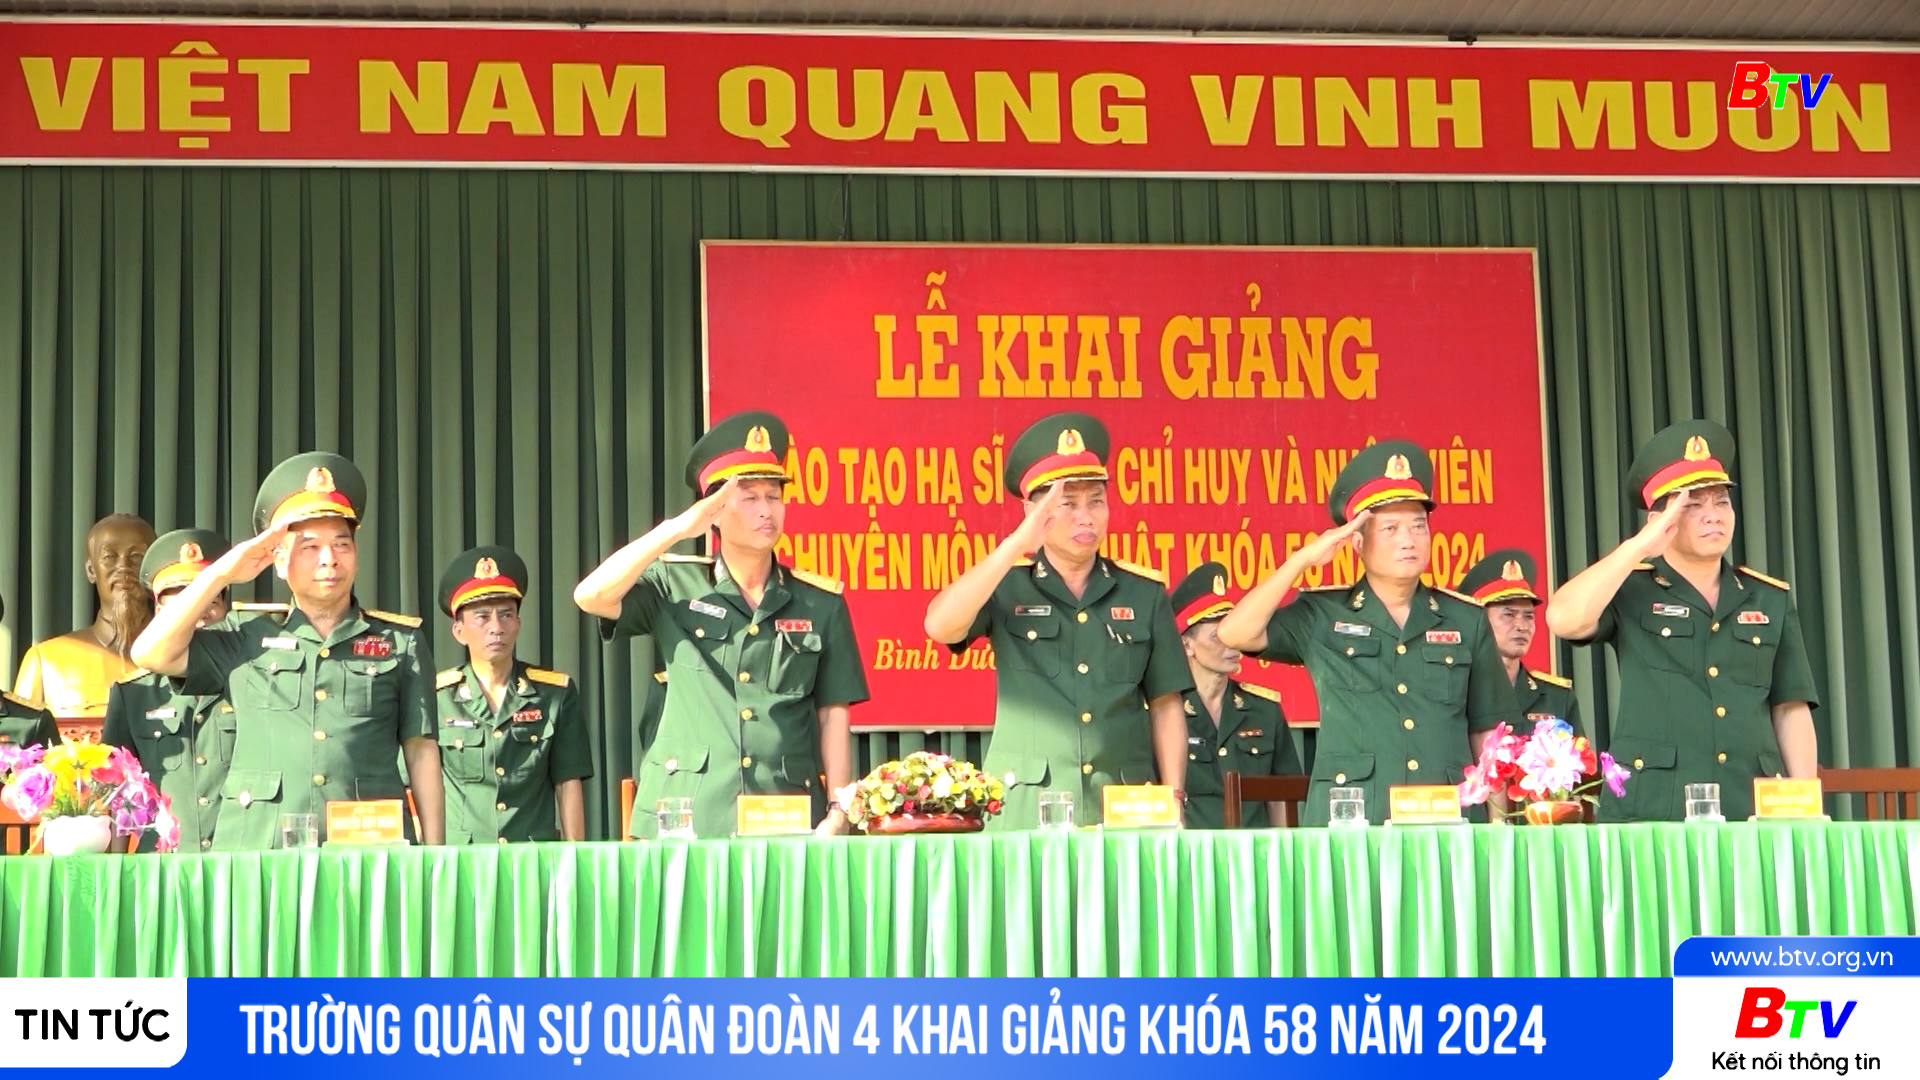 Trường Quân sự Quân đoàn 4 khai giảng khóa 58 năm 2024